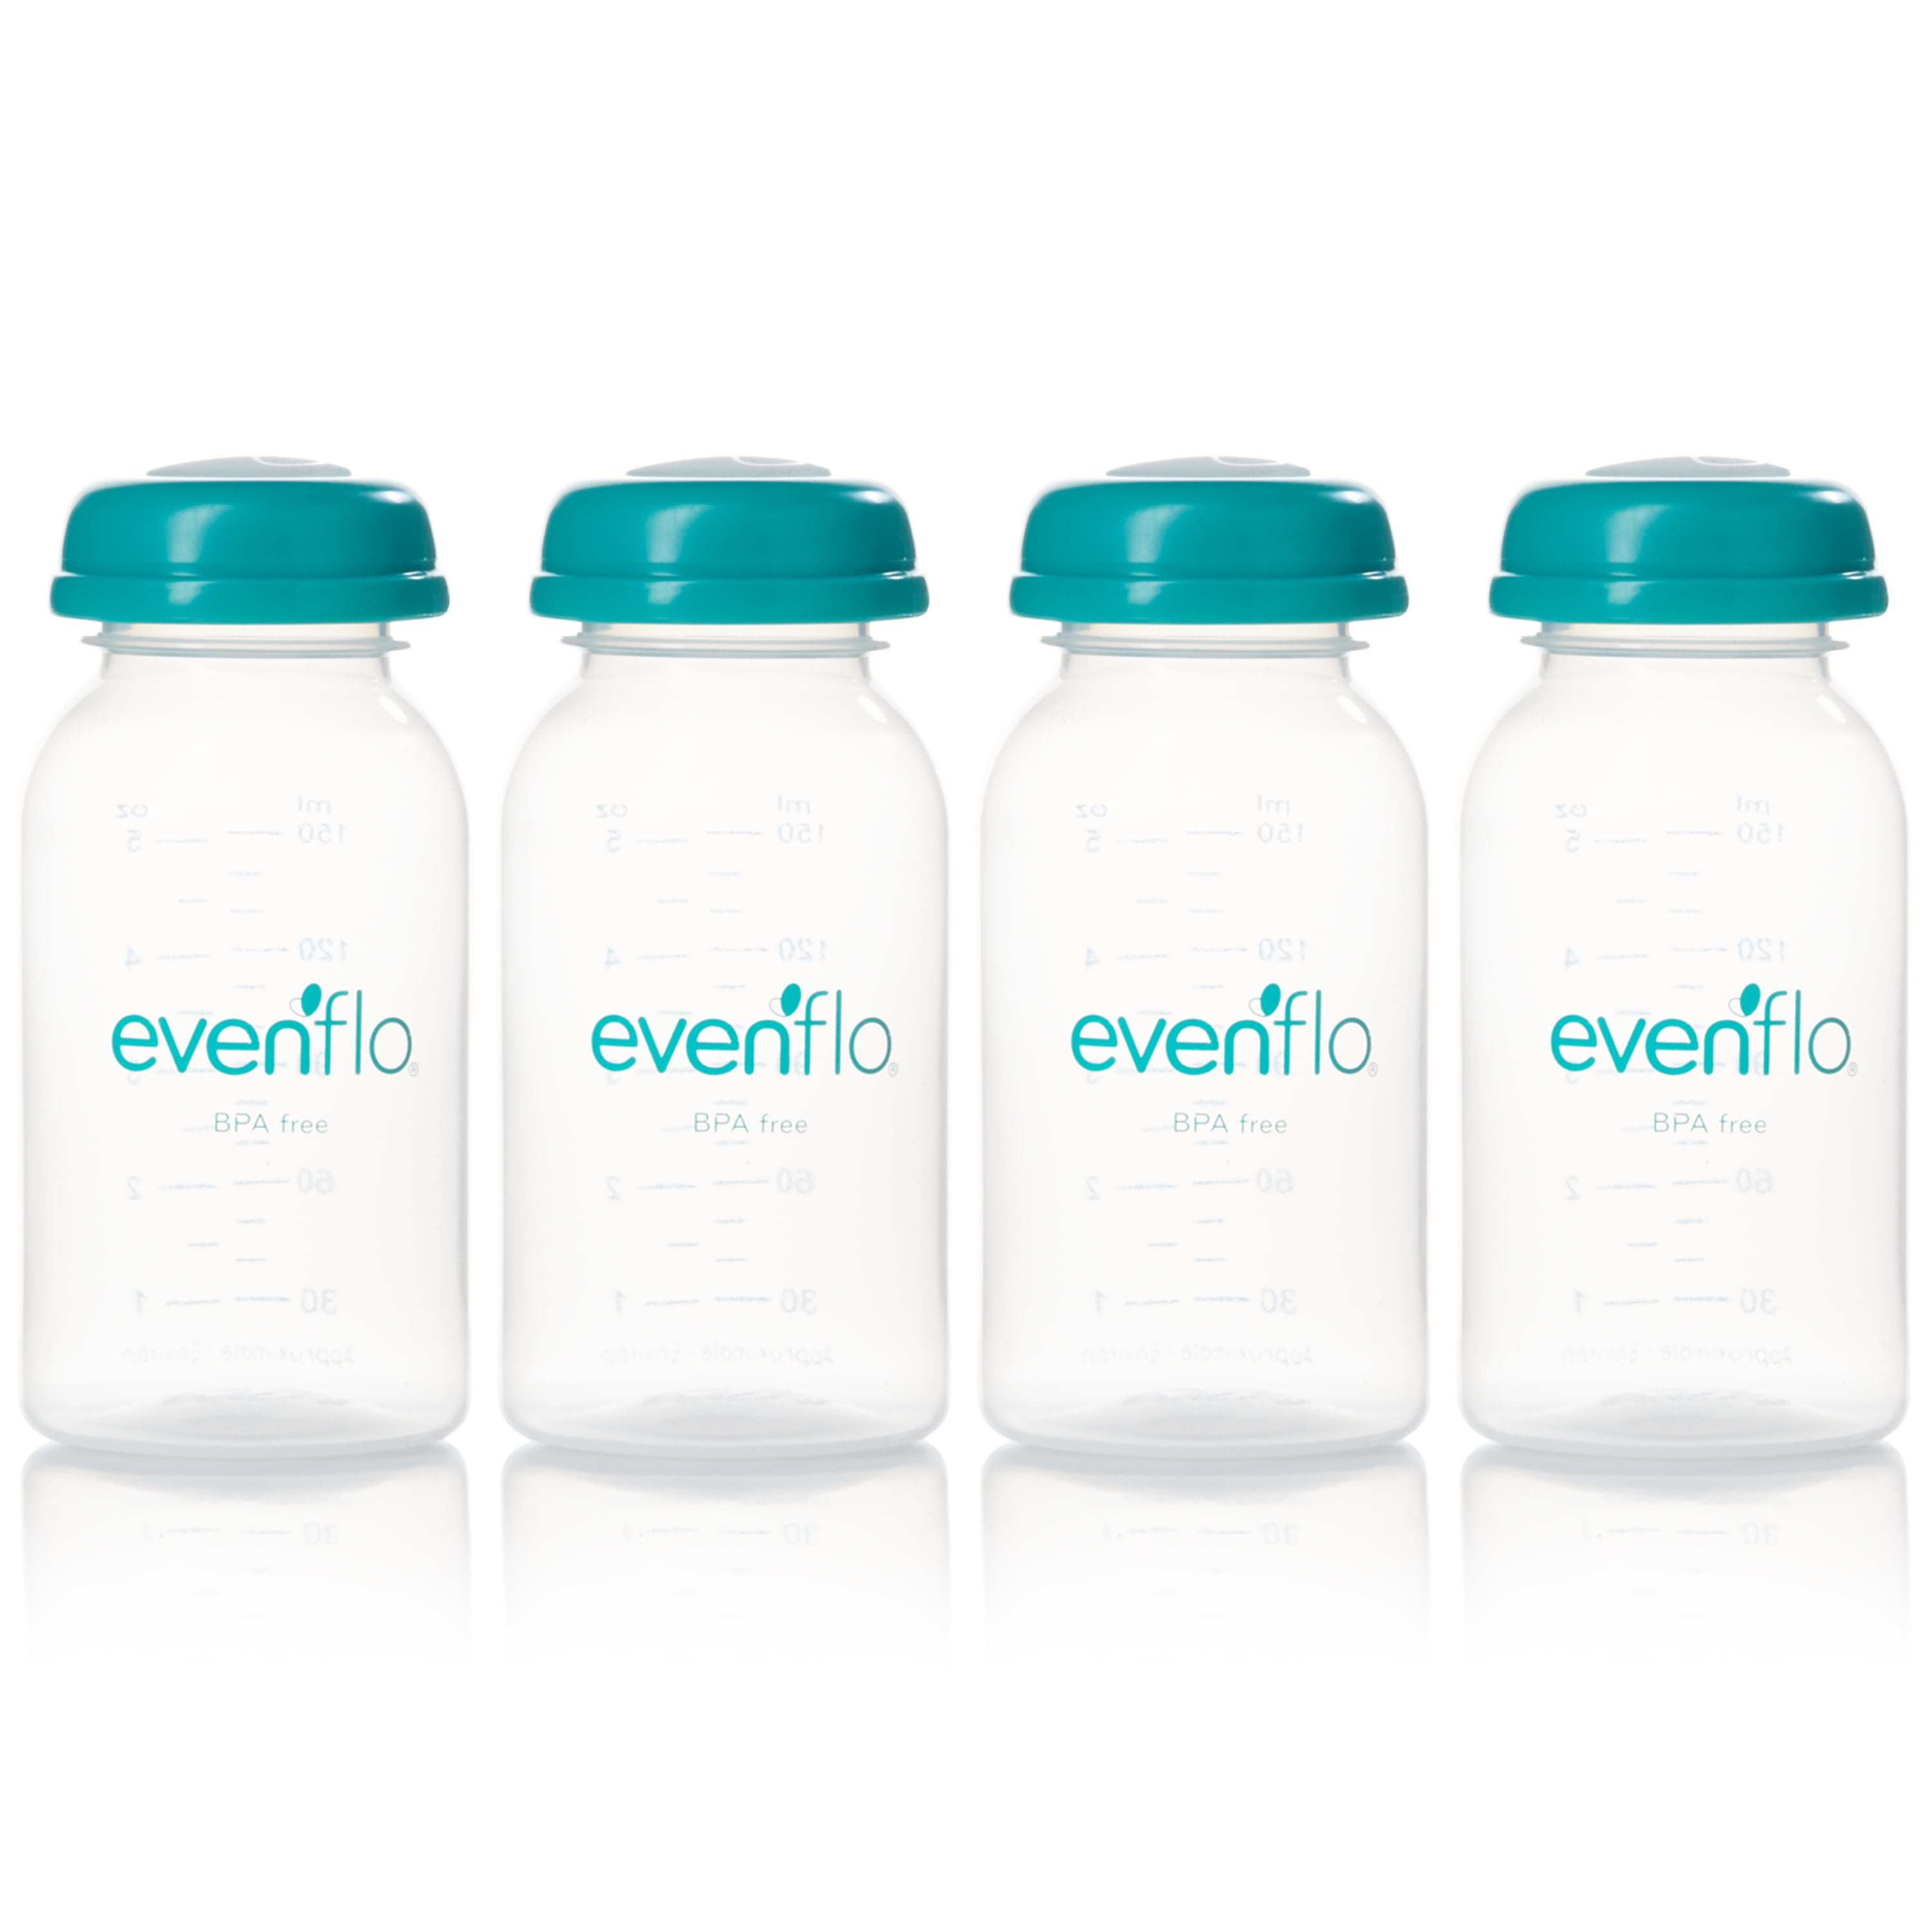 evenflo breast milk bottles